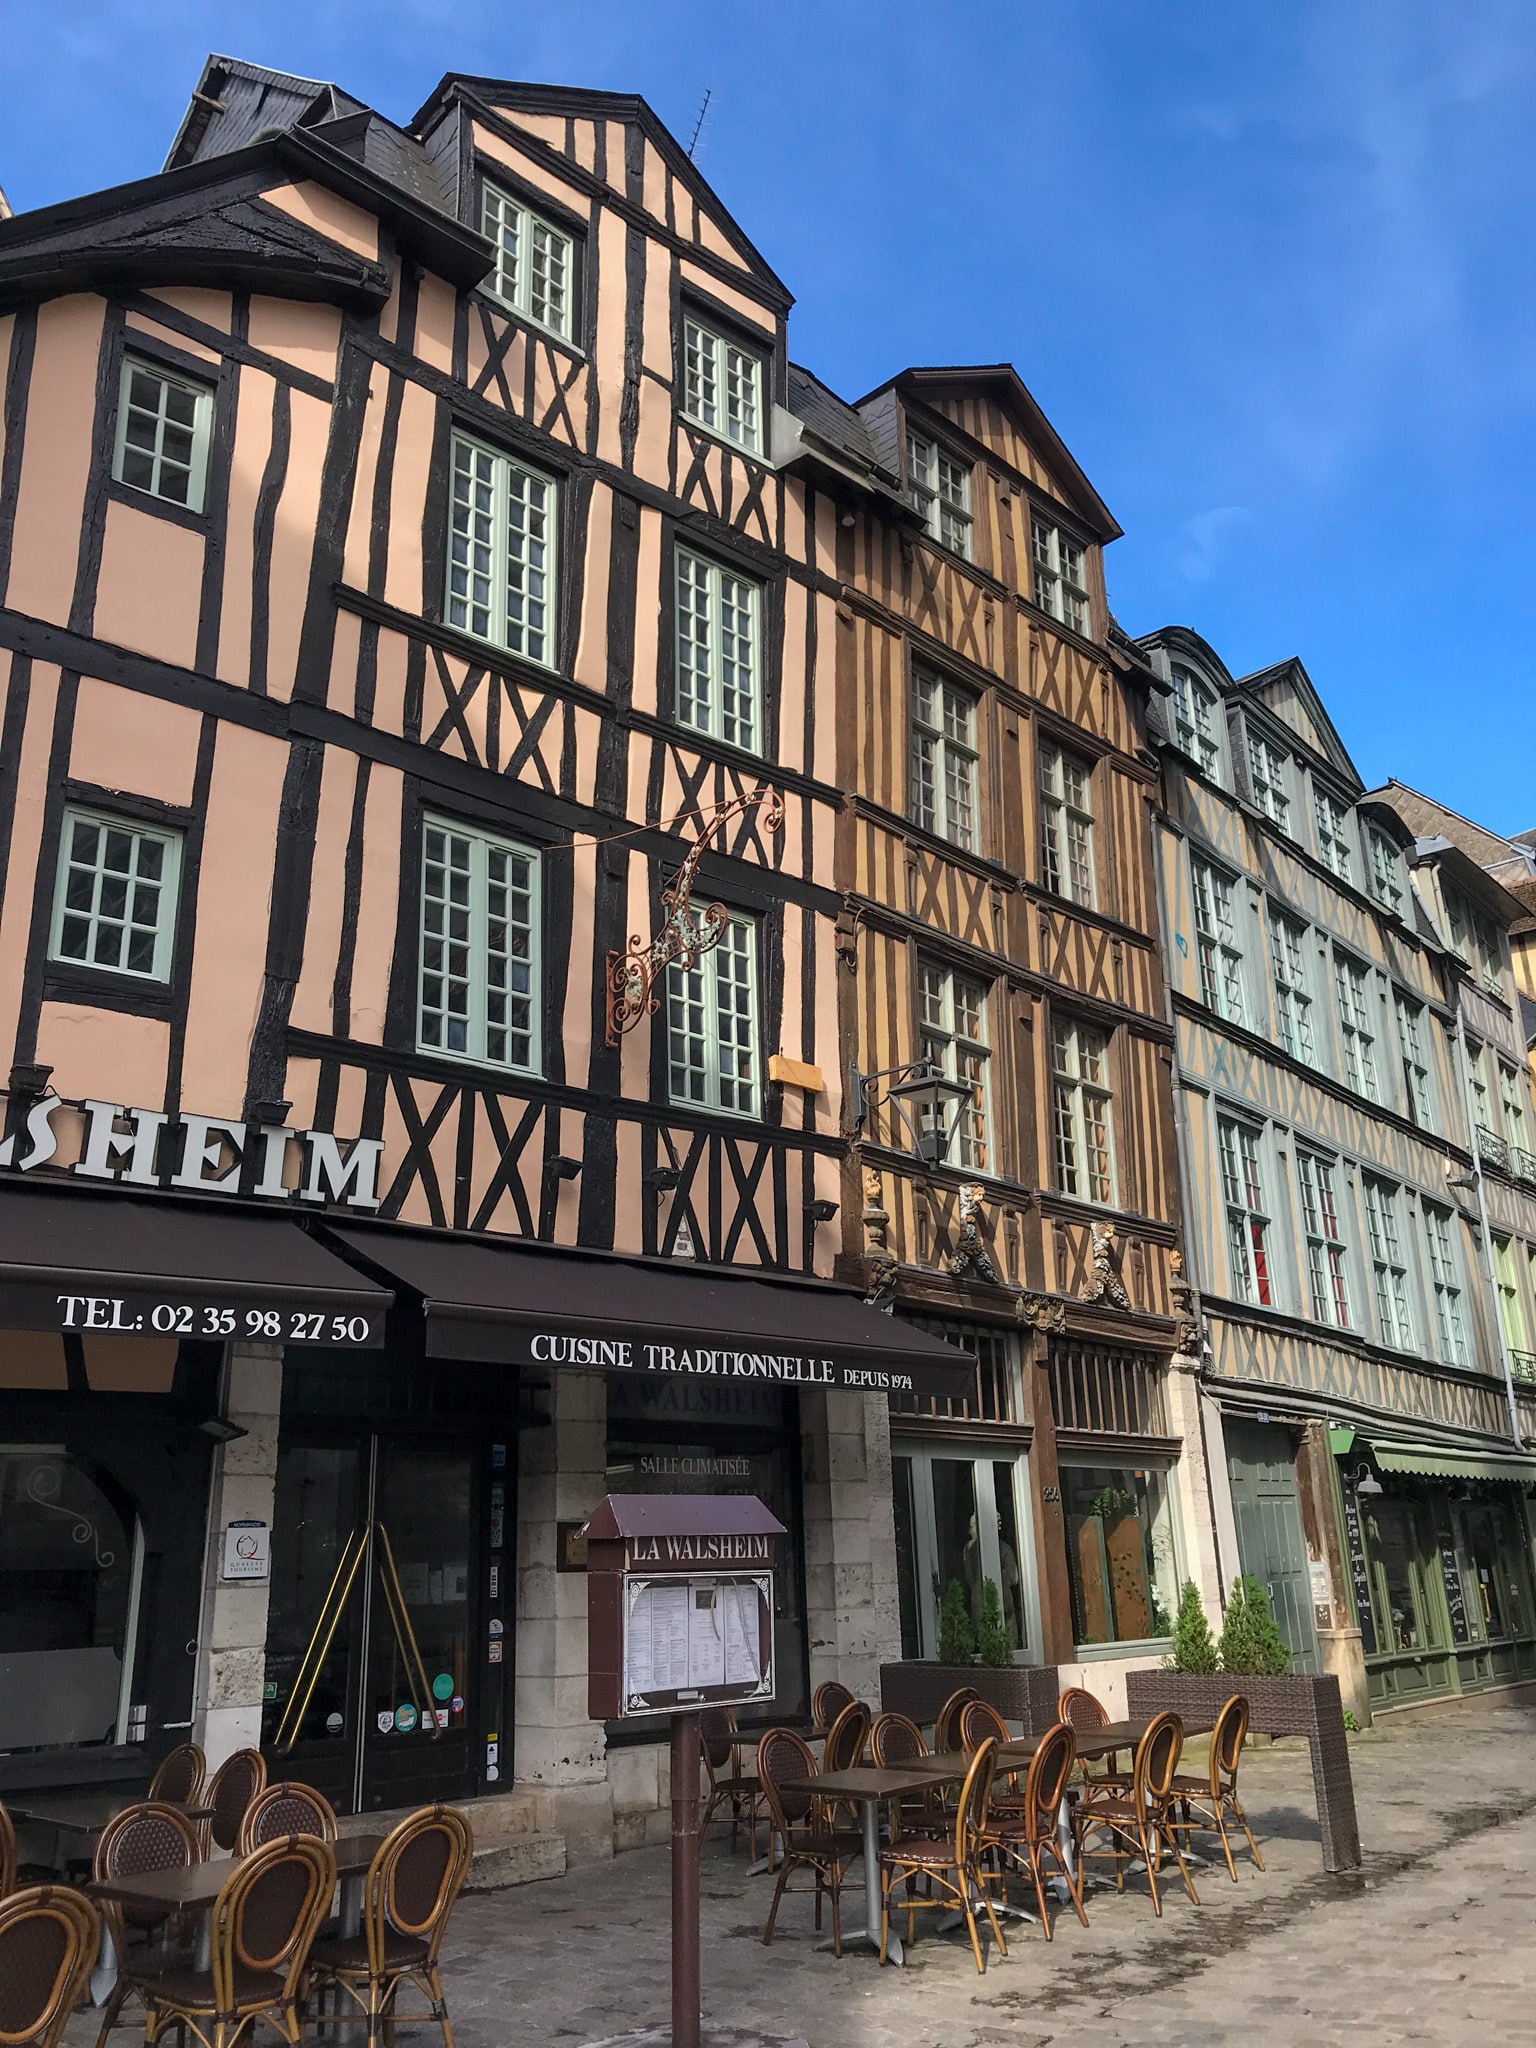 Struin door de sfeervolle straatjes van Rouen